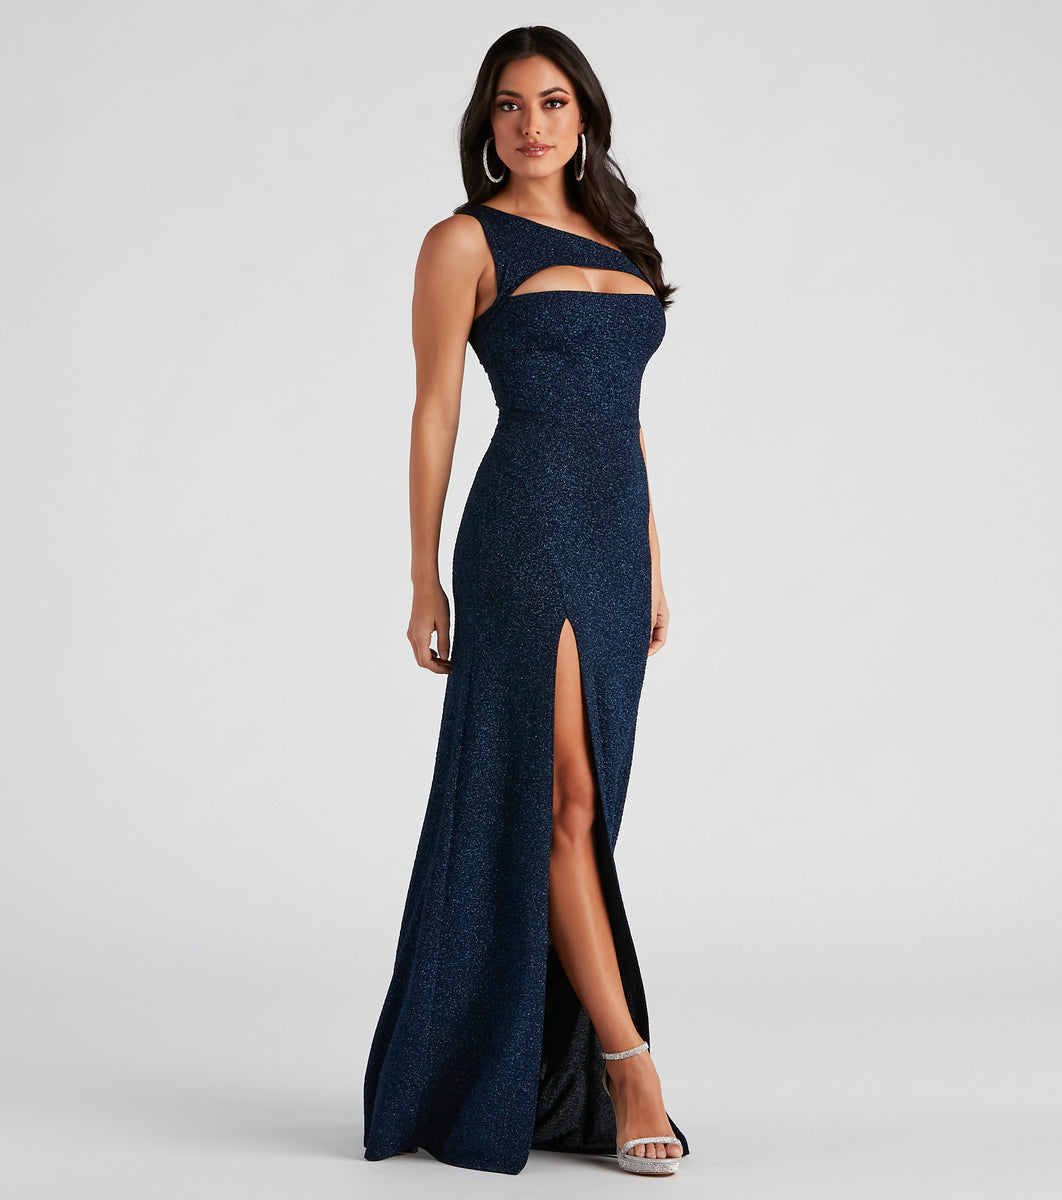 Alanna One-Shoulder Glitter Knit Formal Dress & Windsor